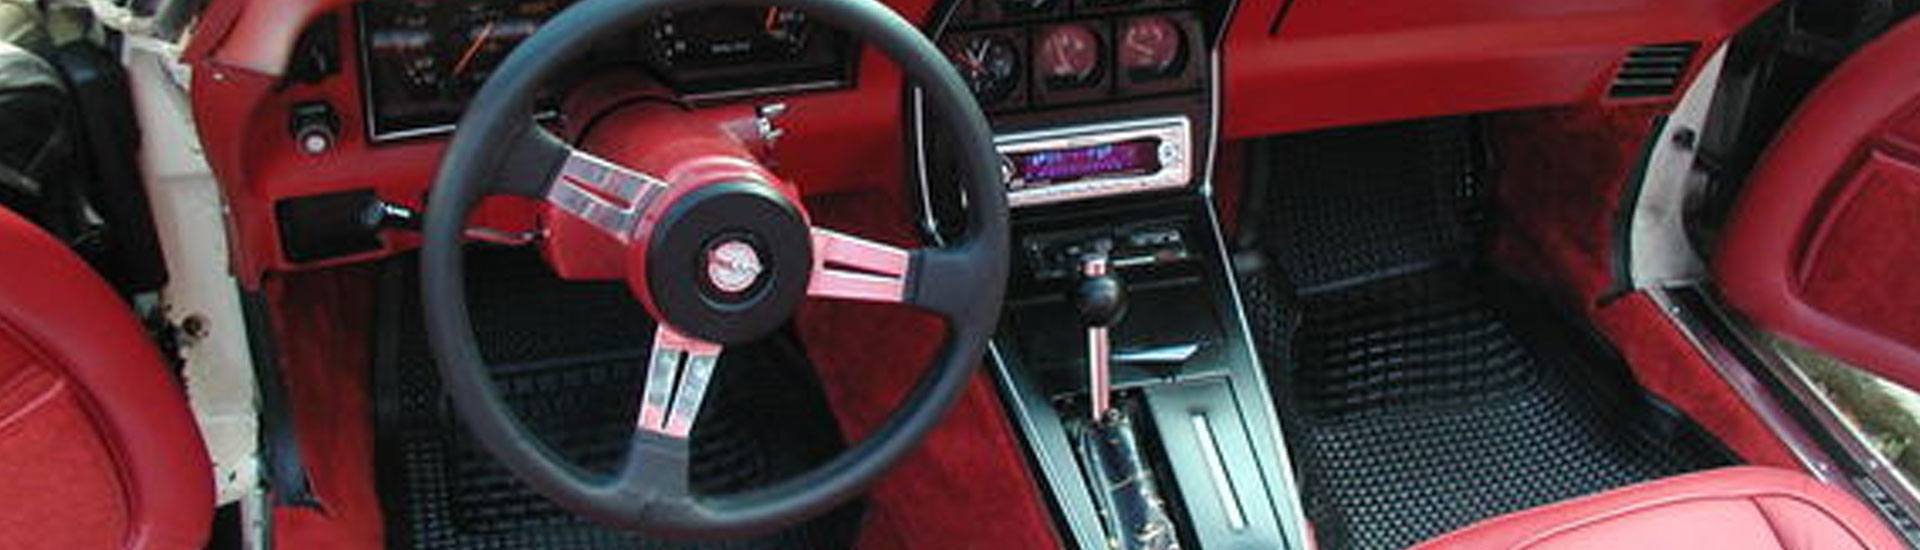 1978 Chevrolet Corvette Dash Kits